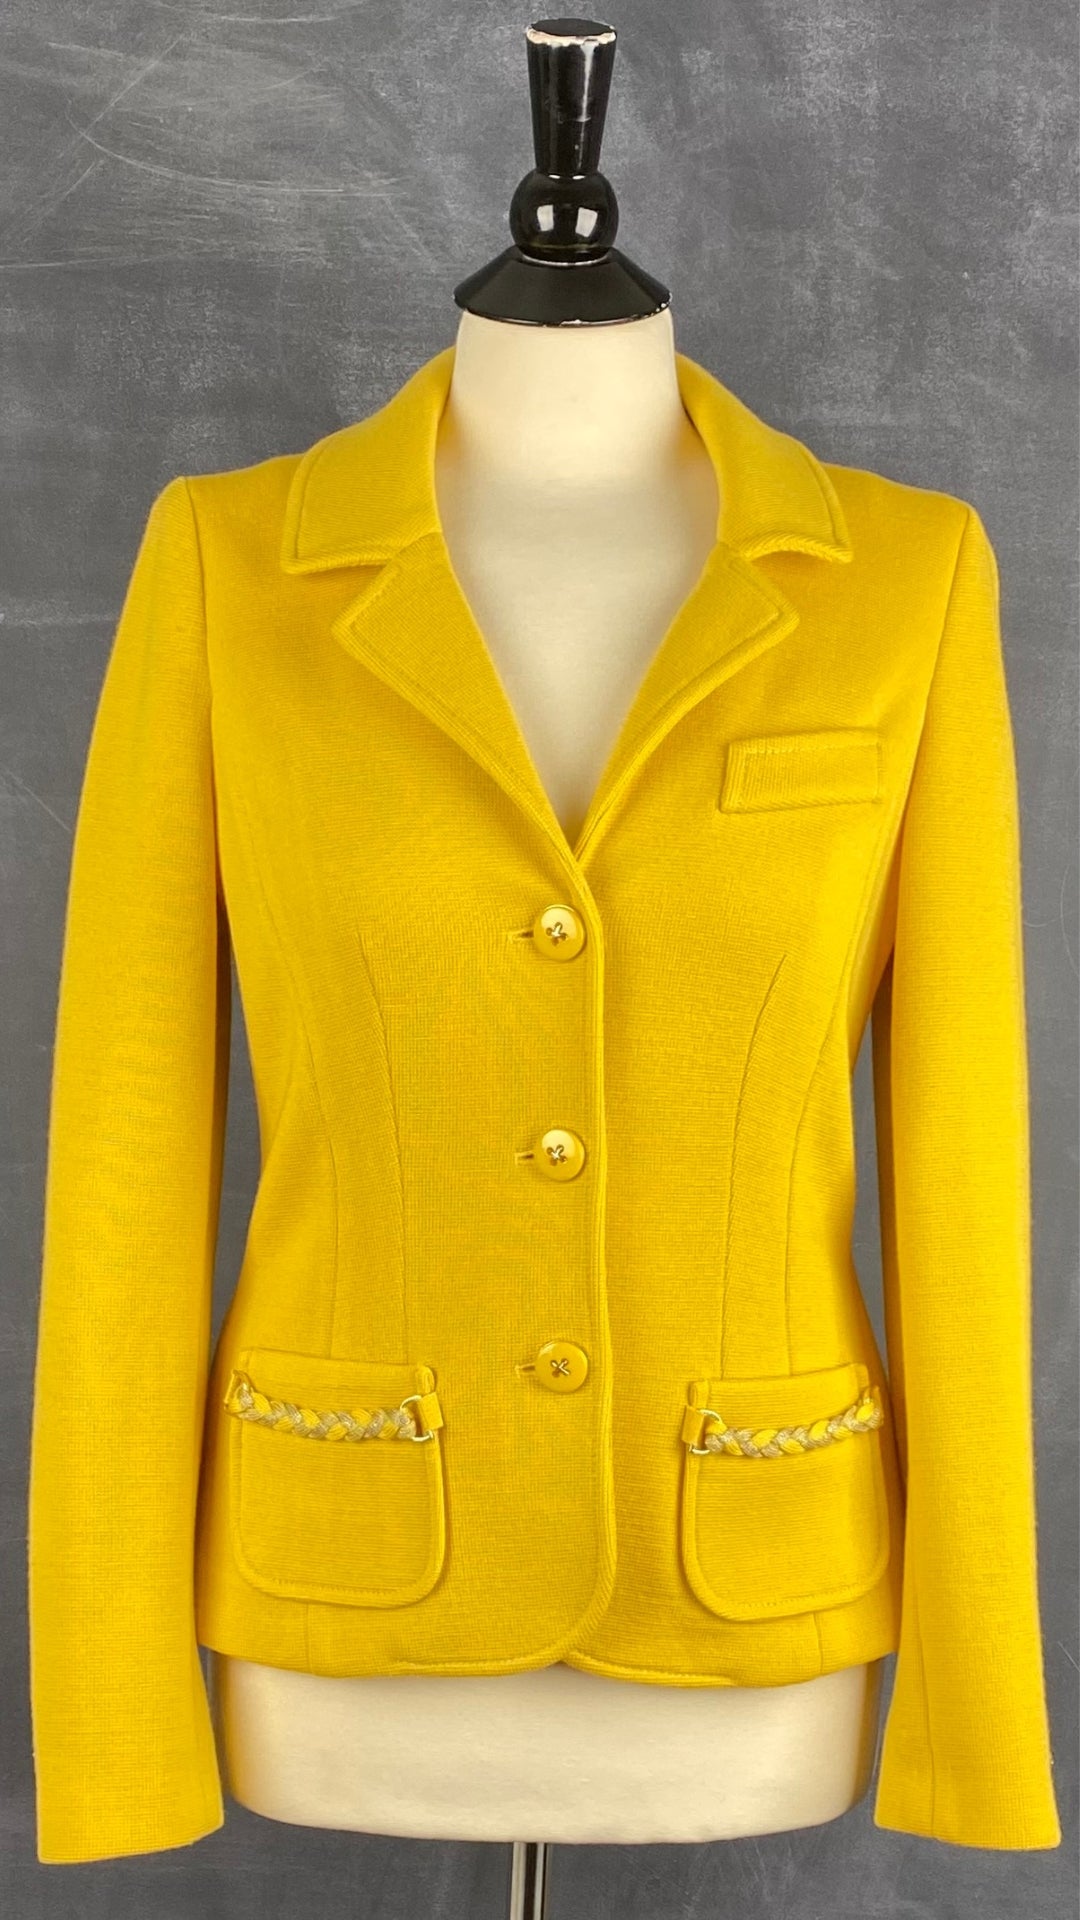 Veste style blazer jaune doré en laine Luisa Spagnoli, taille small. Vue de face.